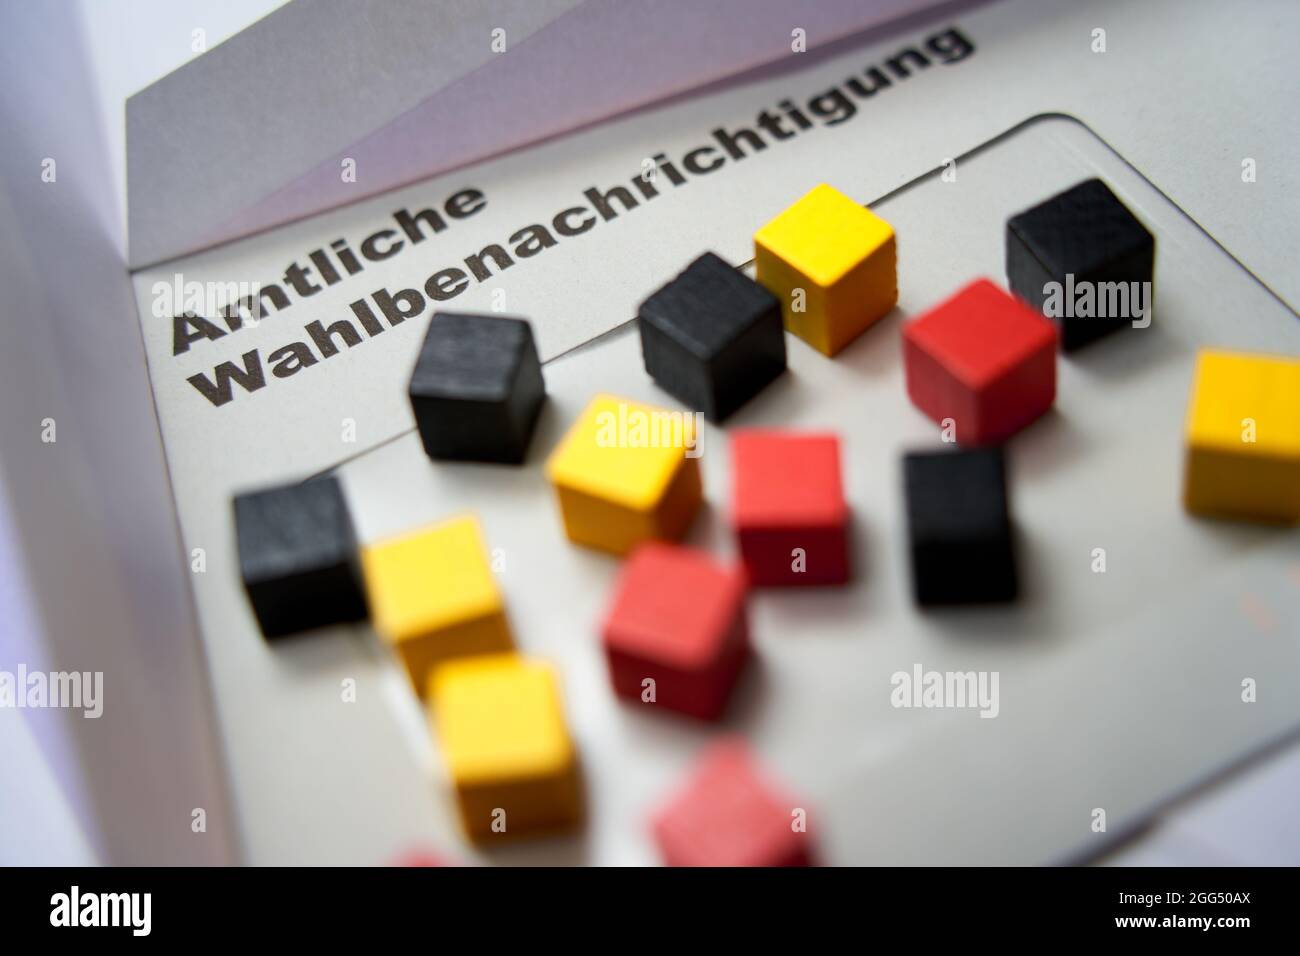 Lettere nere su busta bianca: Notifica ufficiale delle elezioni (in tedesco: Amtliche Wahlbenachrichtigung). Cubi di legno in oro rosso nero. 2021 f Foto Stock